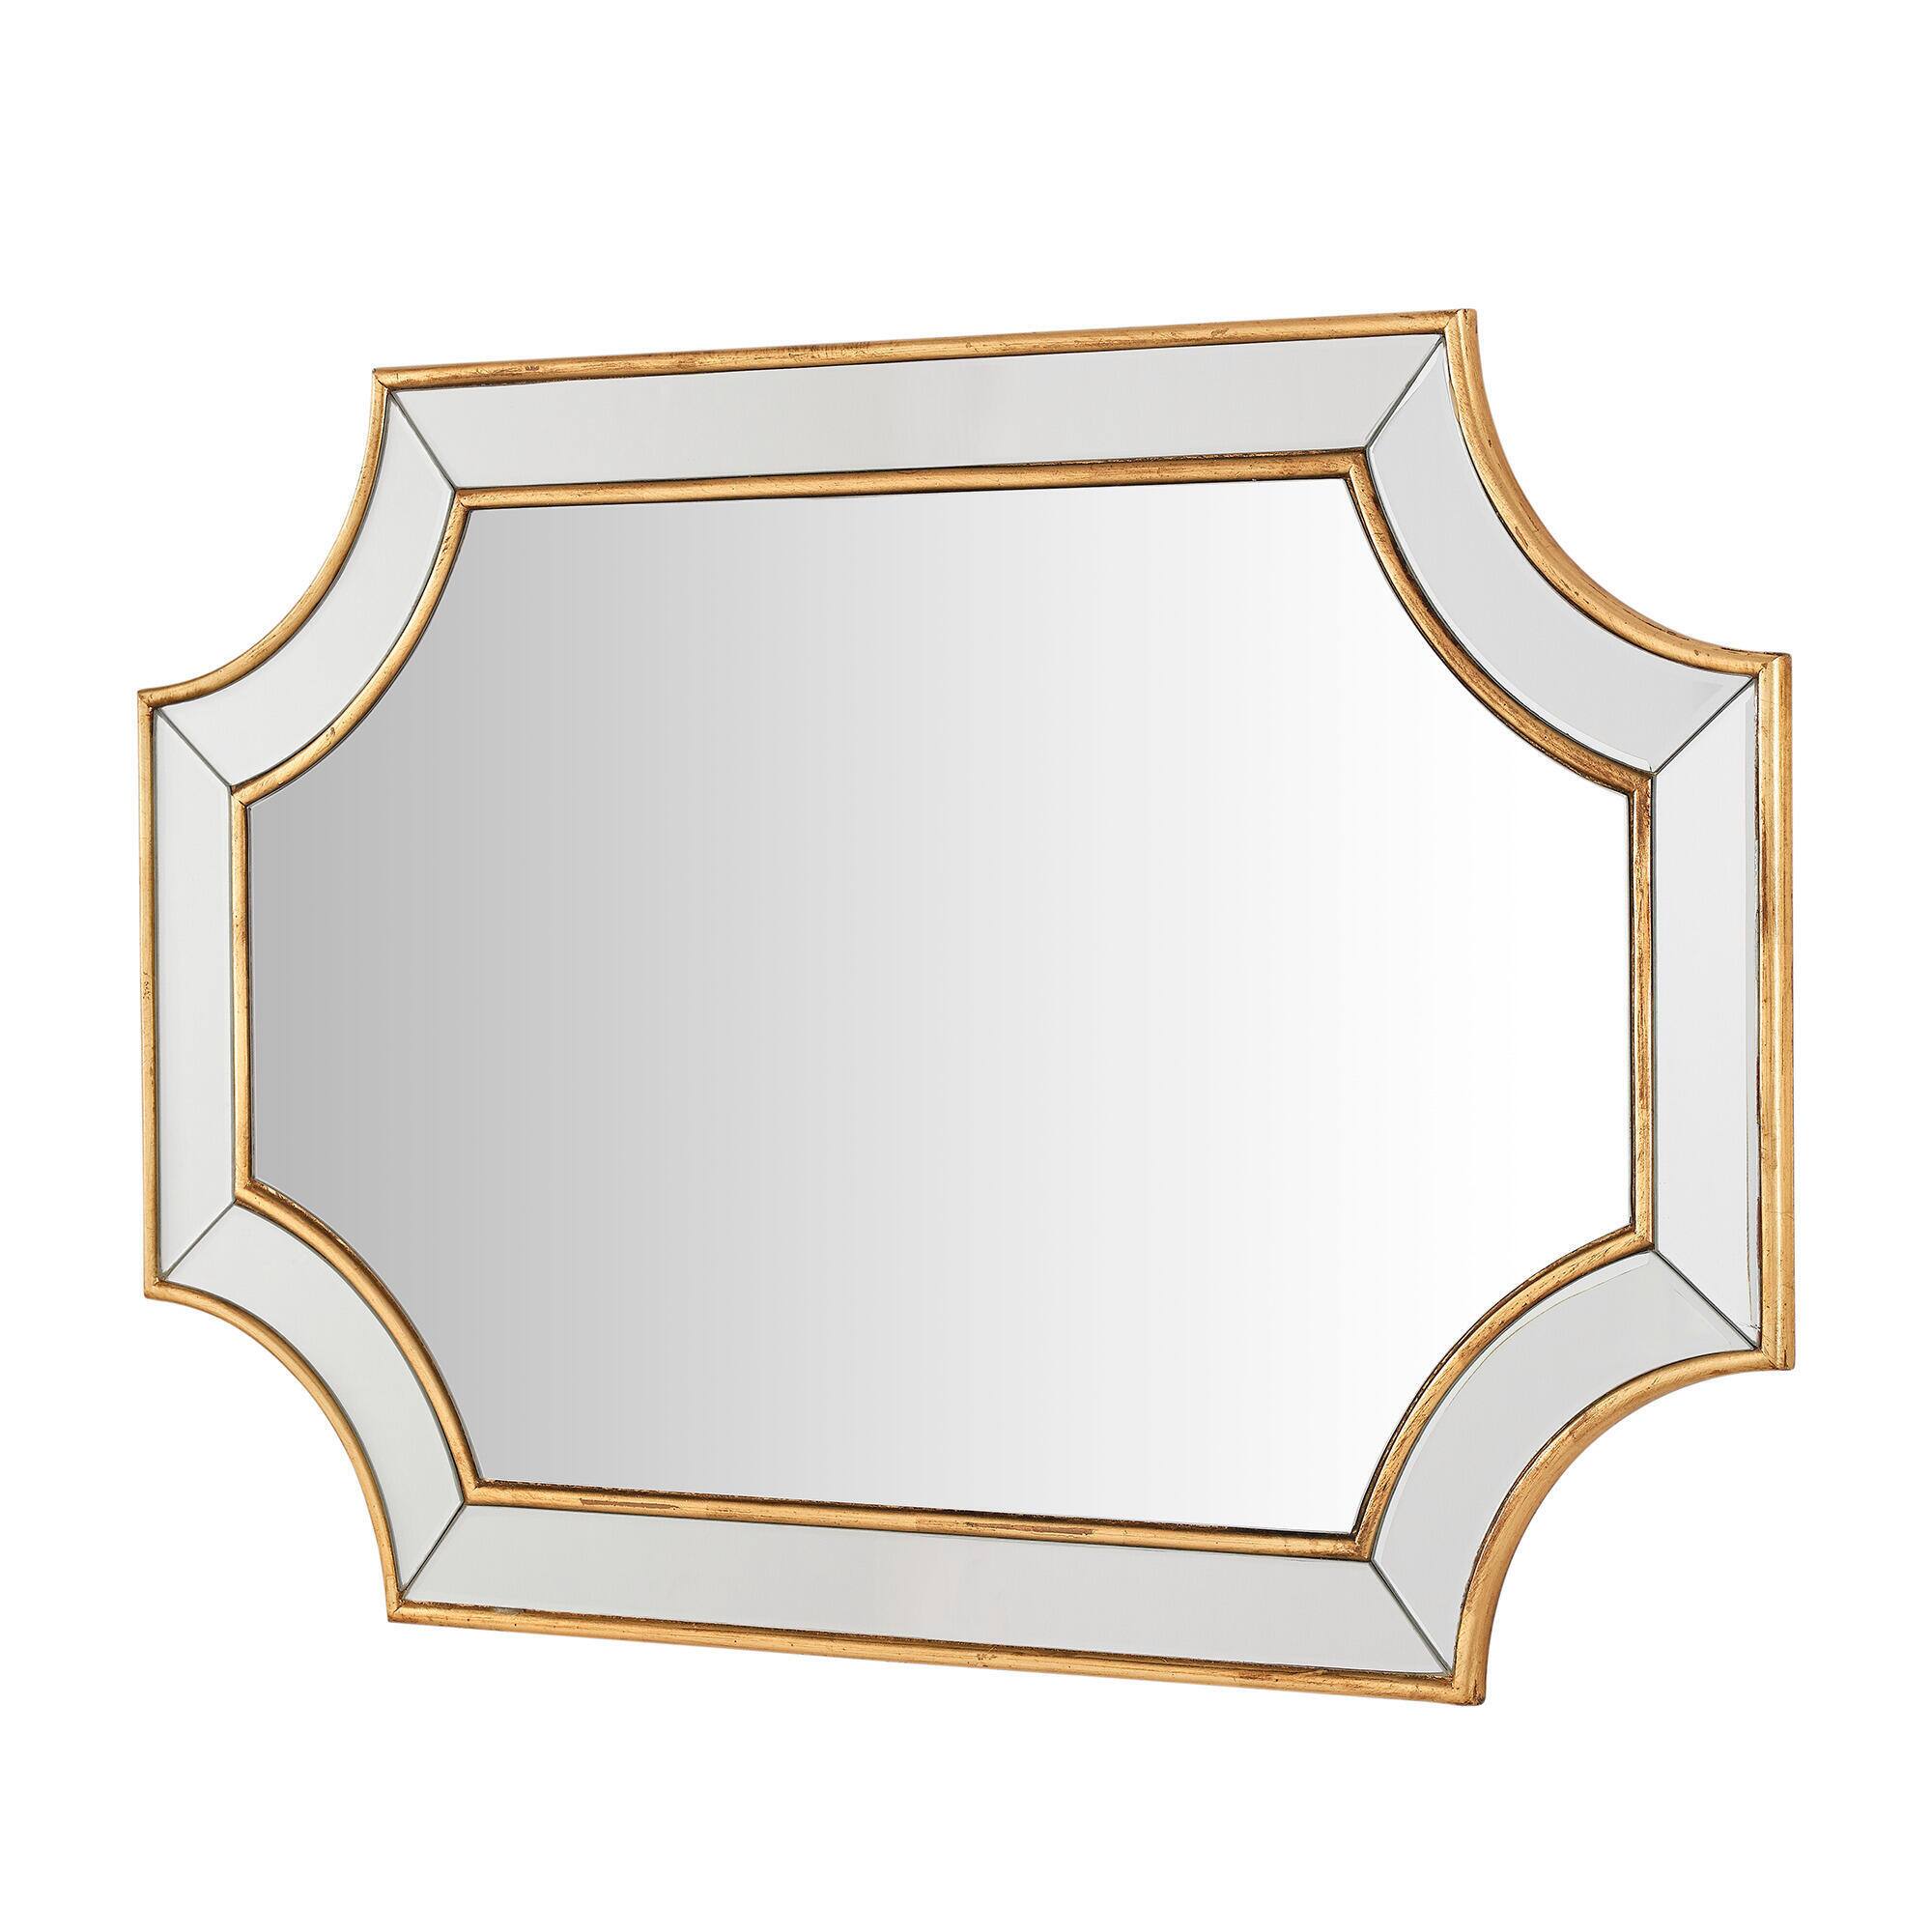 Medium Ornate Gold Beveled Glass Classic Accent Mirror (24 in. H x 35 in. W) - $95